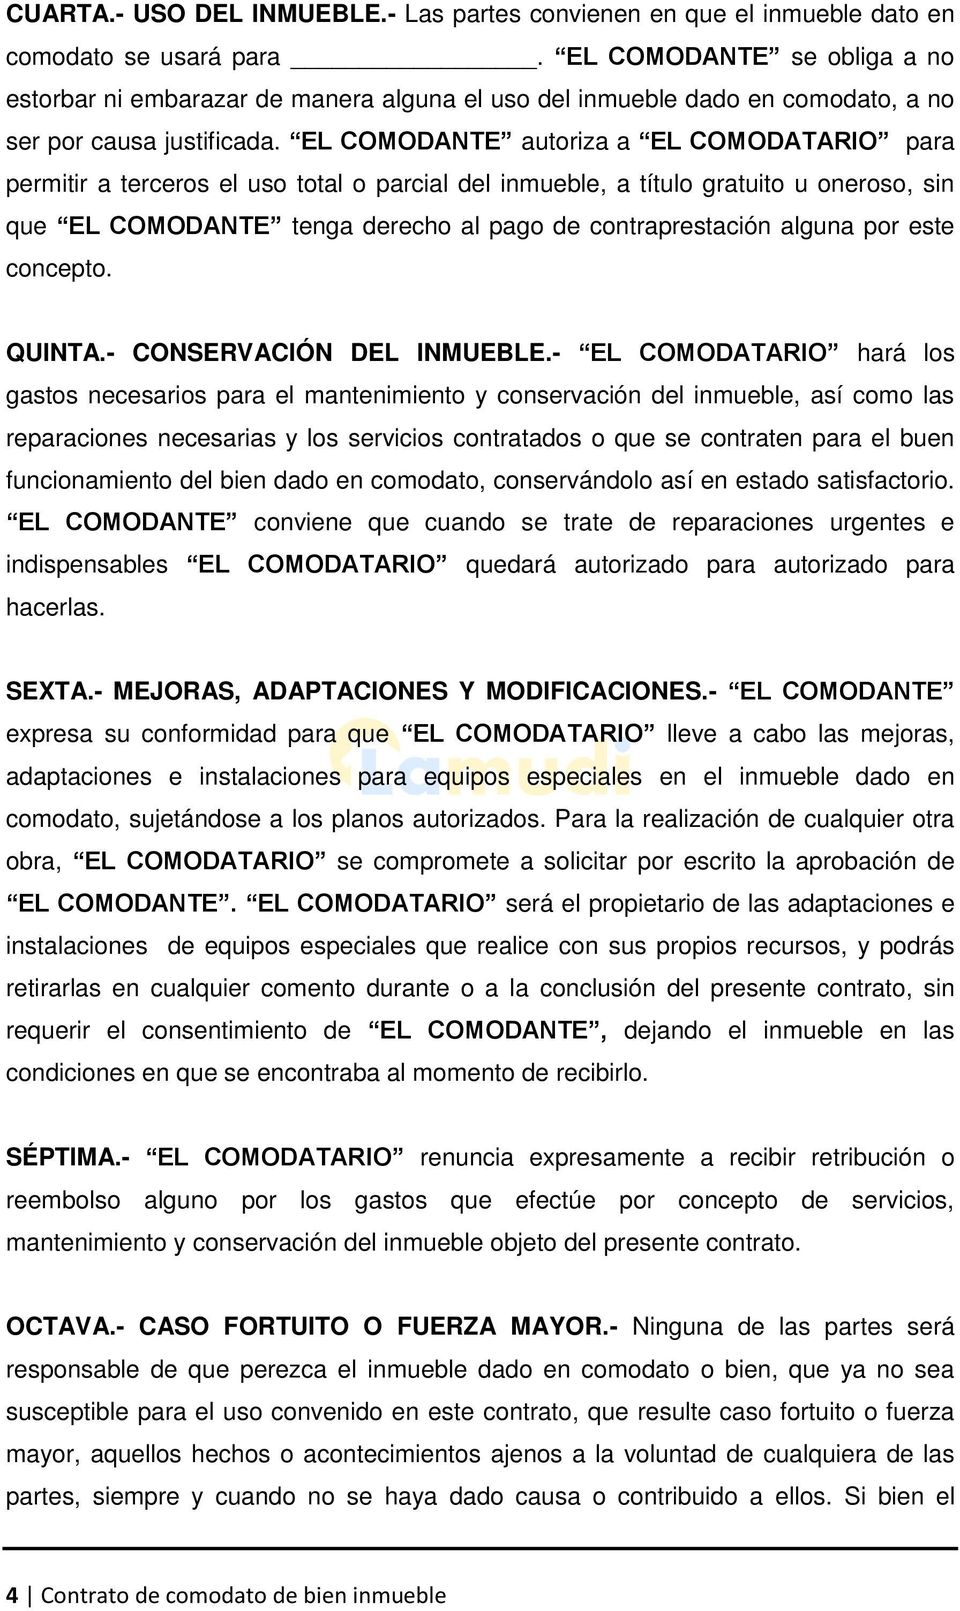 FORMATO DE CONTRATO DE COMODATO PARA BIENES INMUEBLES - PDF Descargar libre